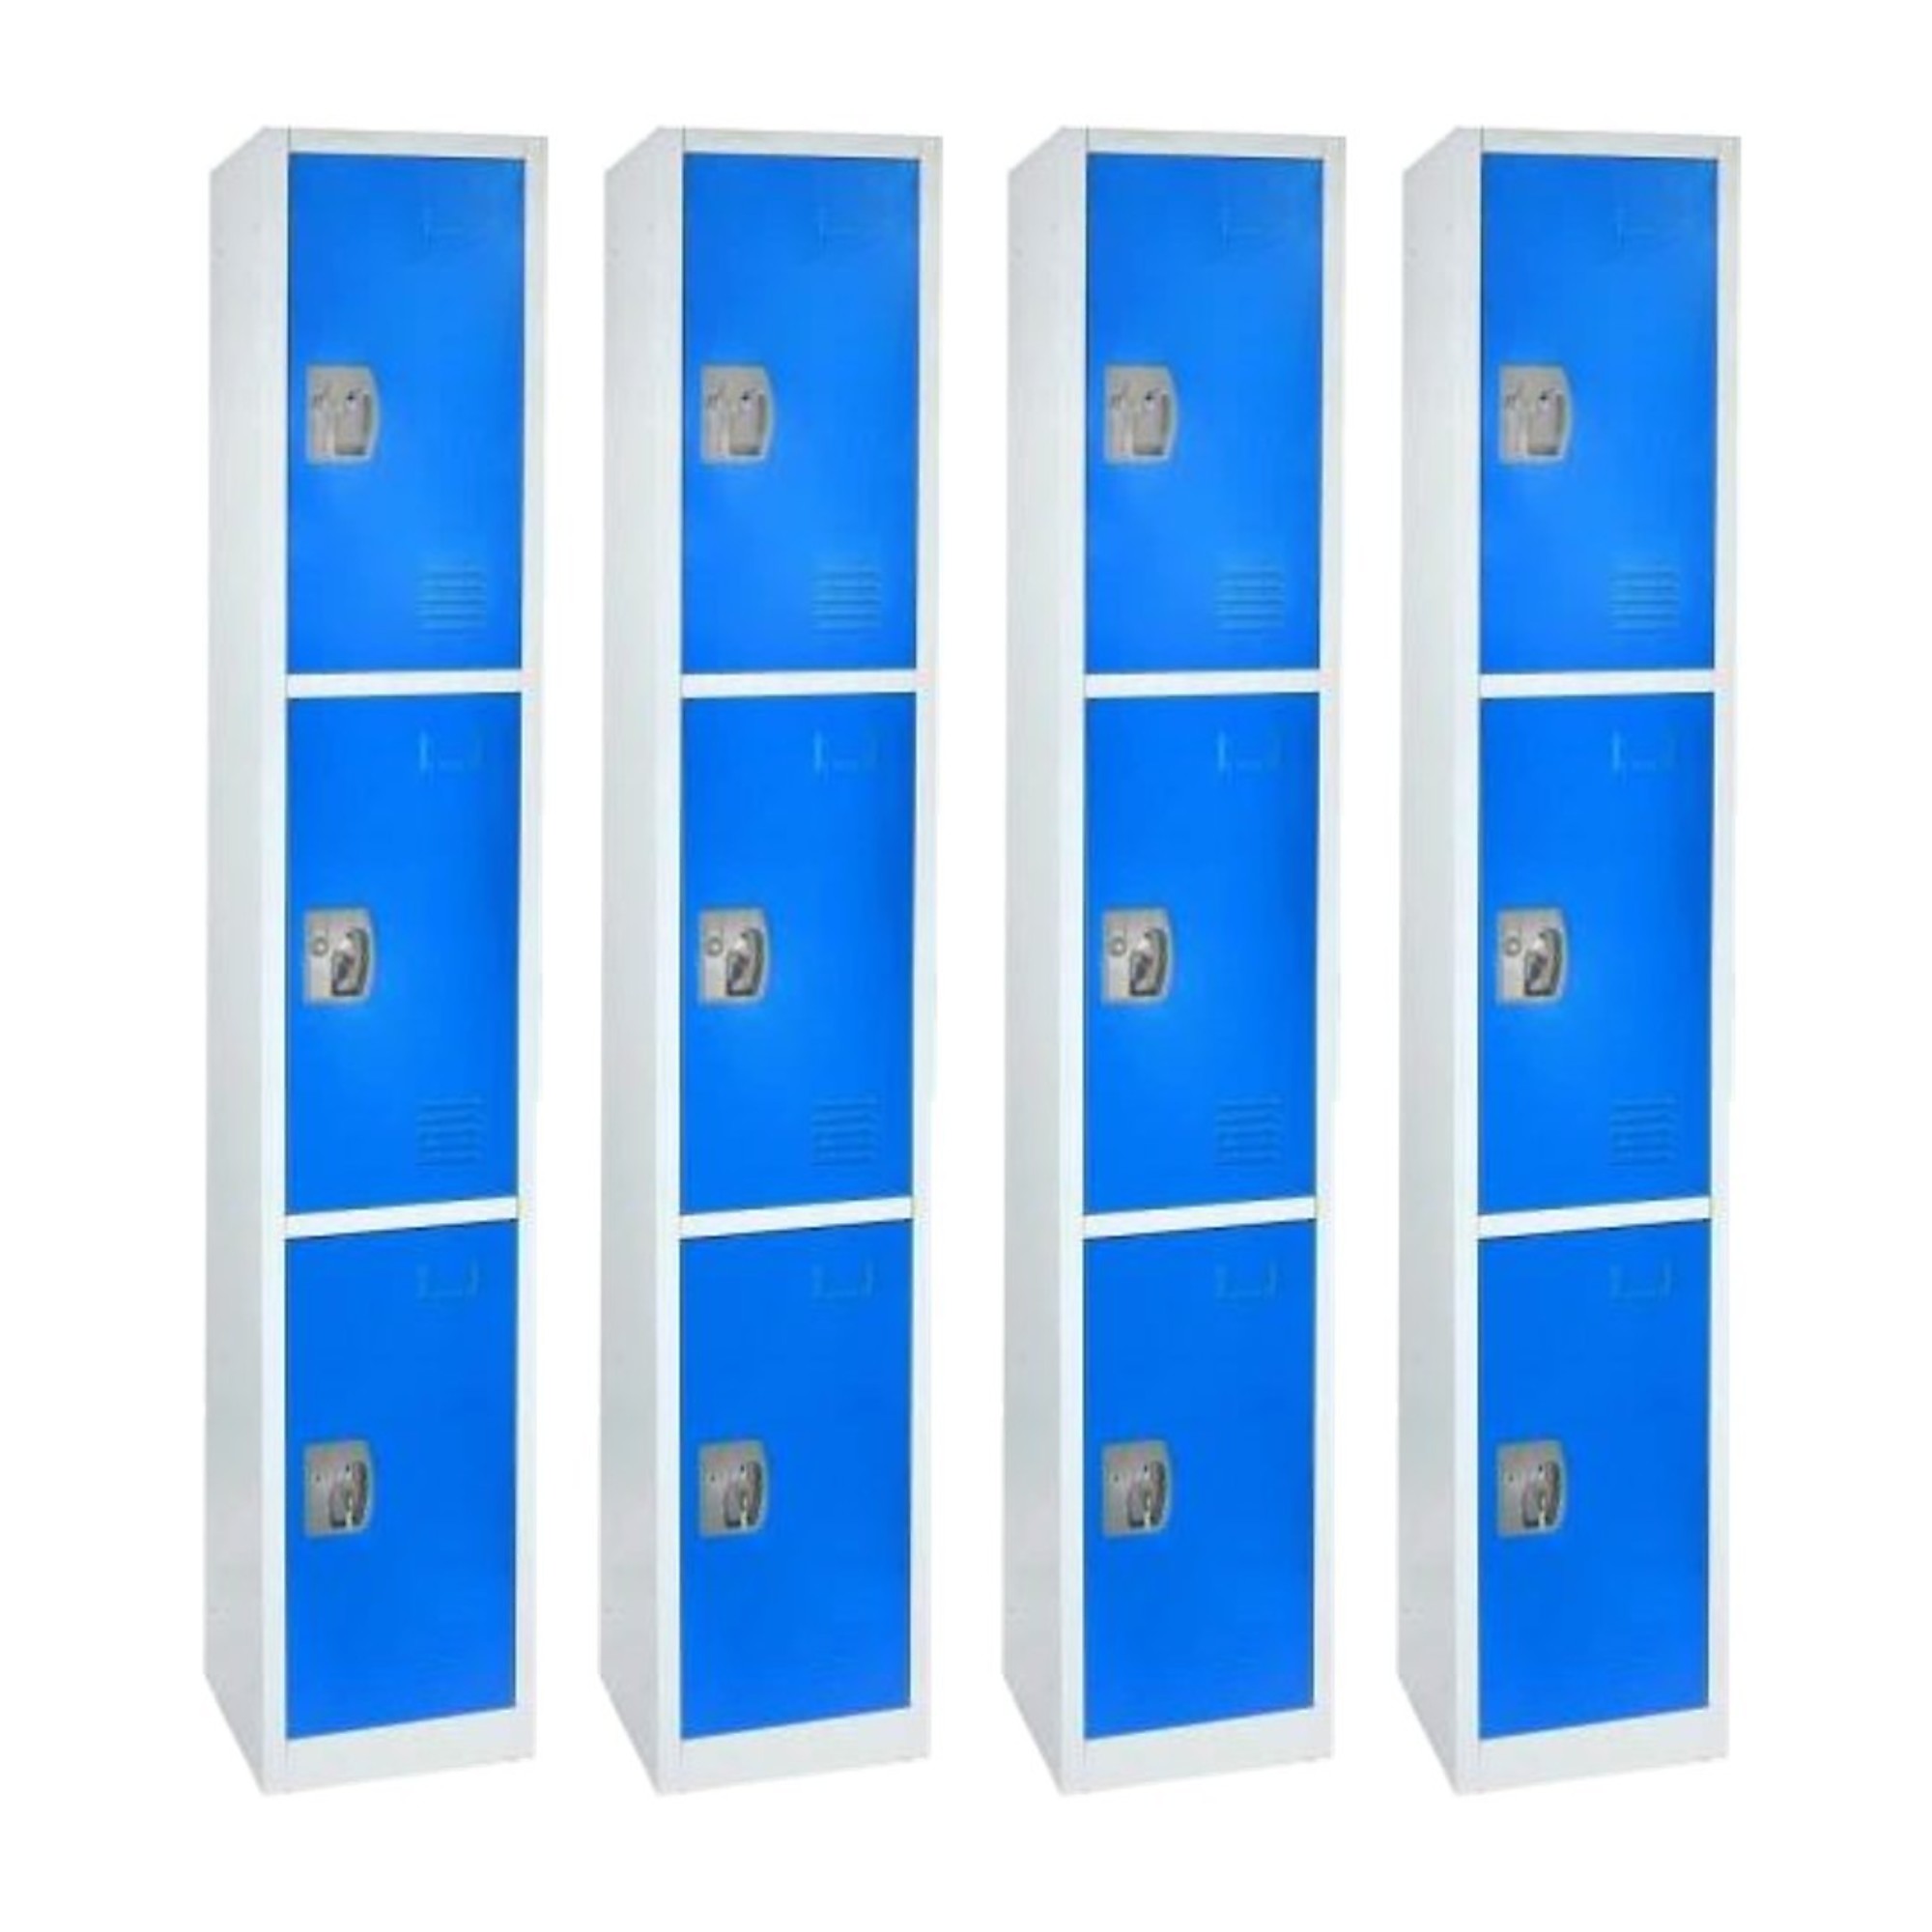 Alpine, 72Inch H 3-Tier Steel Storage Locker, Blue, 4-Pack, Height 72 in, Width 12 in, Color Blue, Model ADI629-203-BLU-4PK